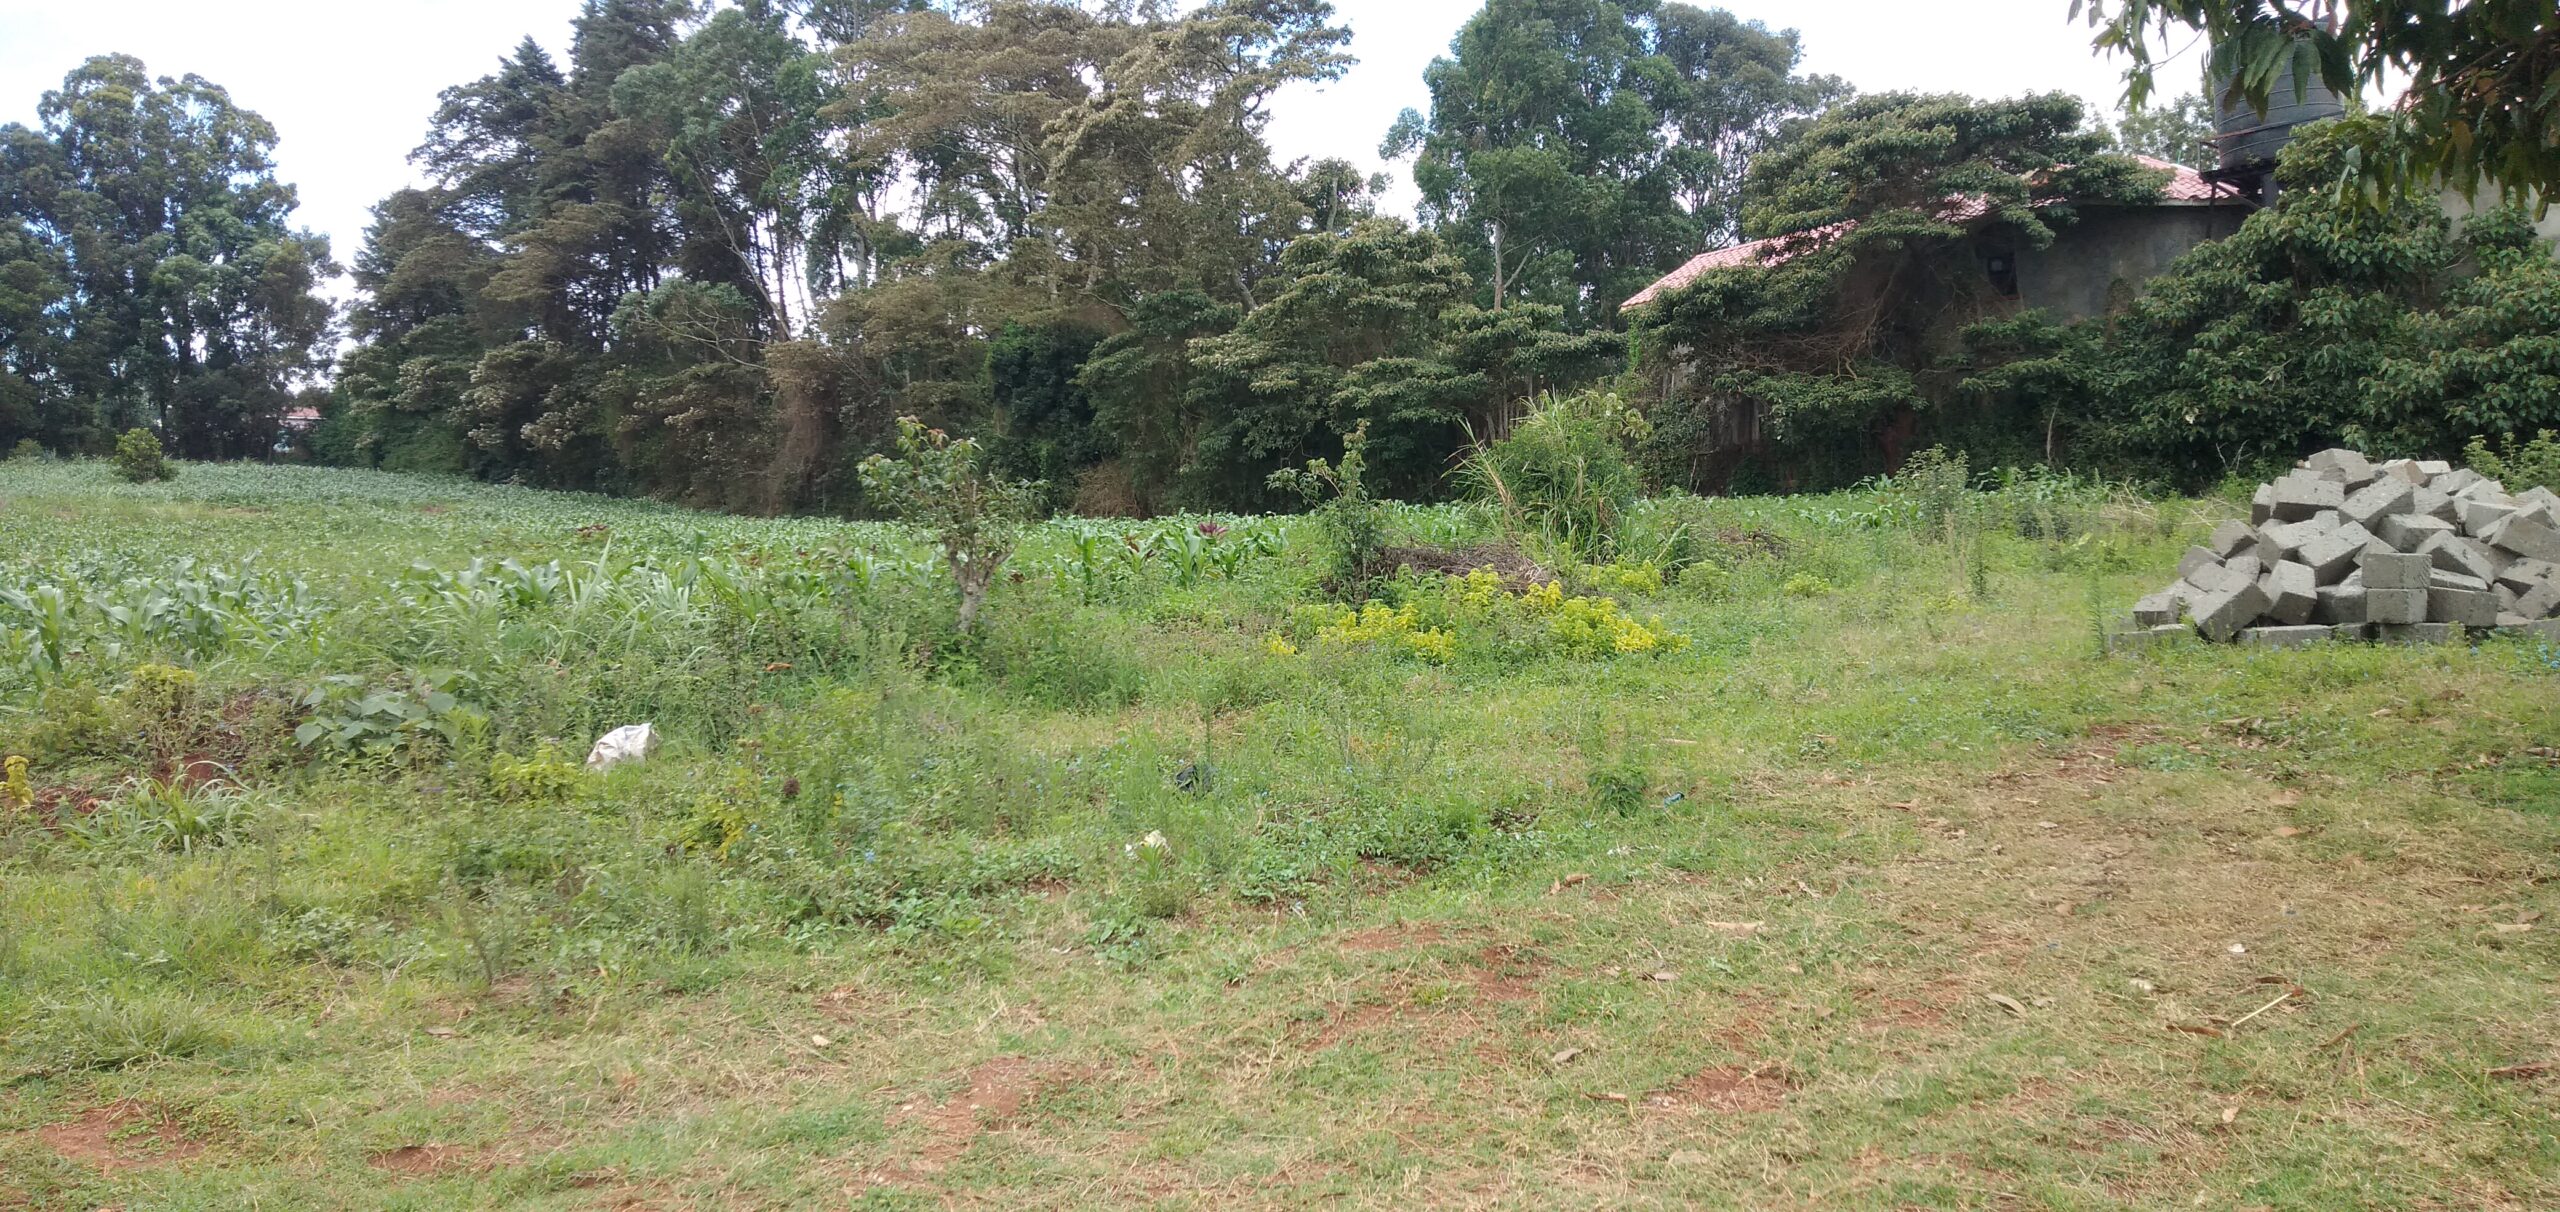 1/2 Acre Land for Sale in Gikambura